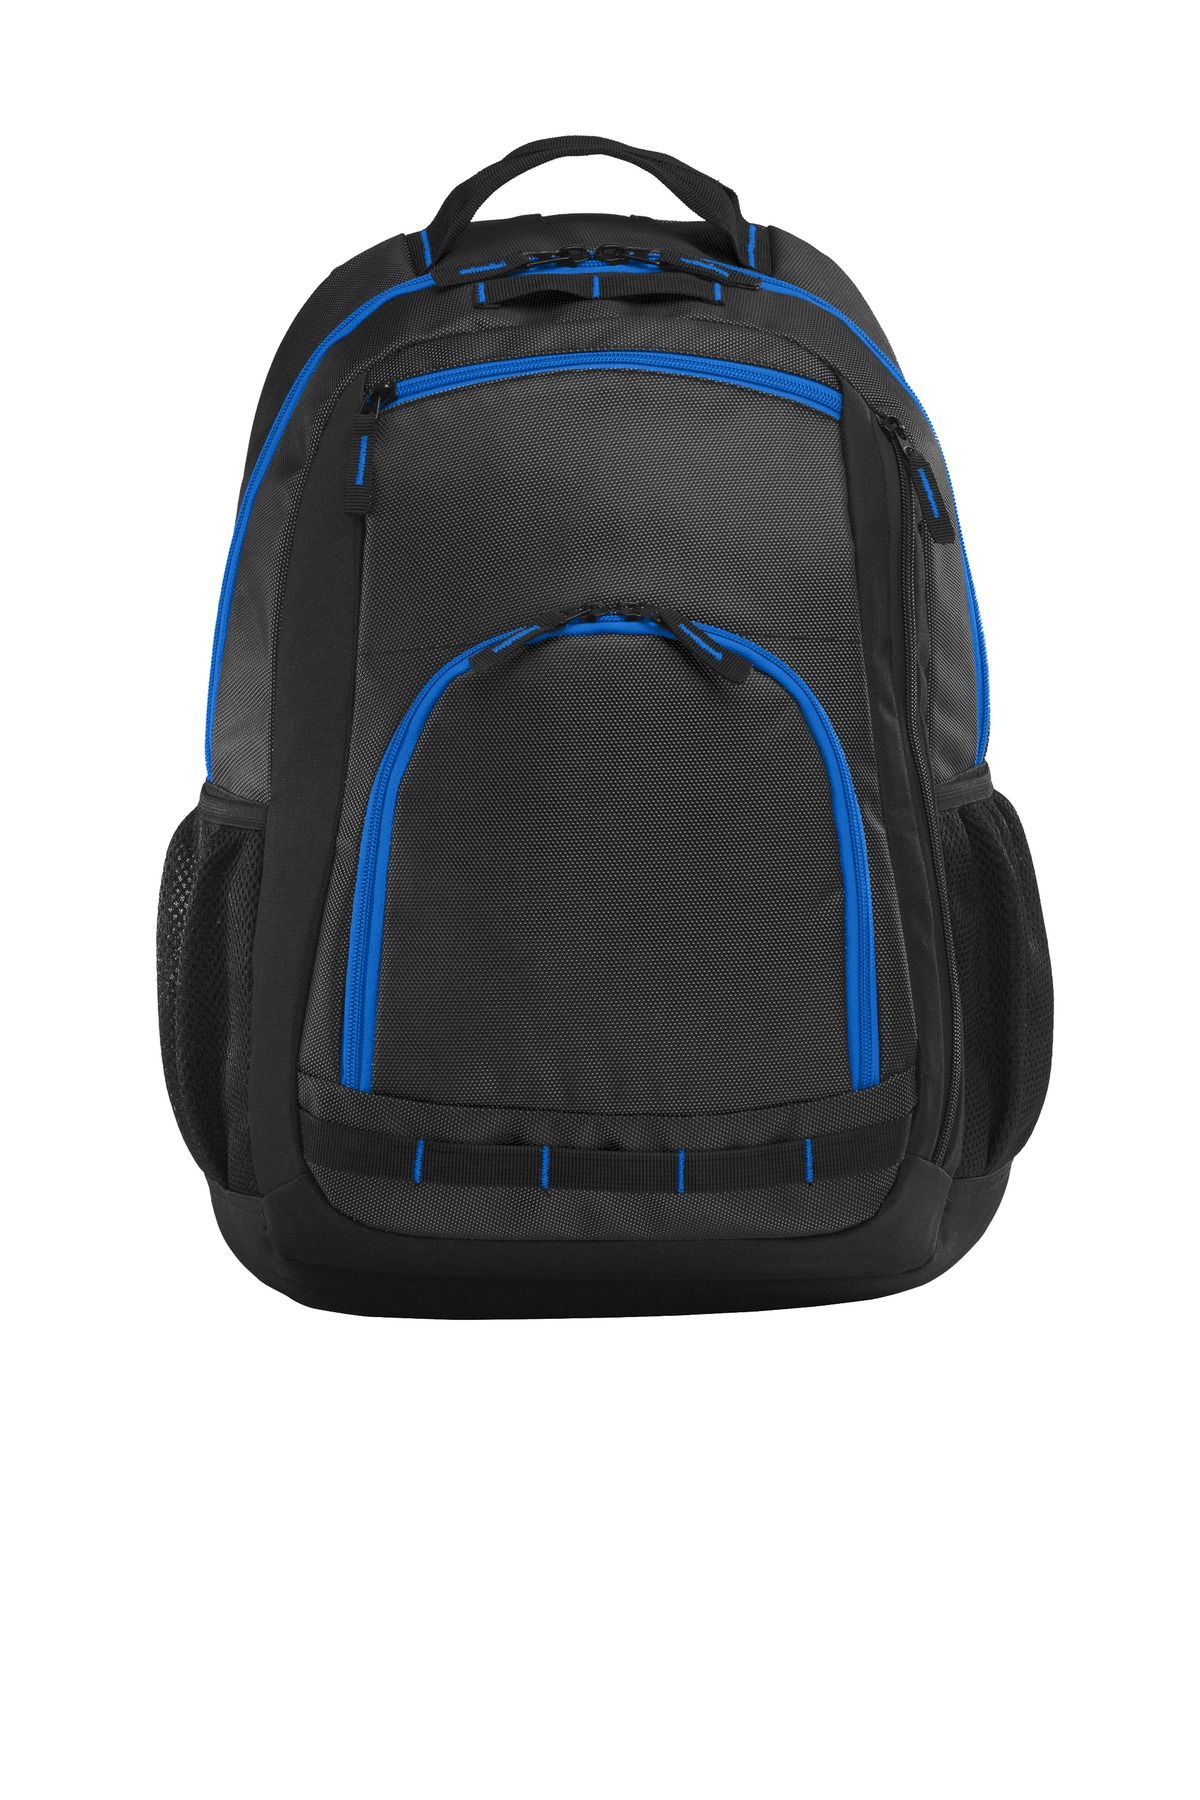 Port Authority ® Xtreme Backpack. BG207 - image 2 of 2